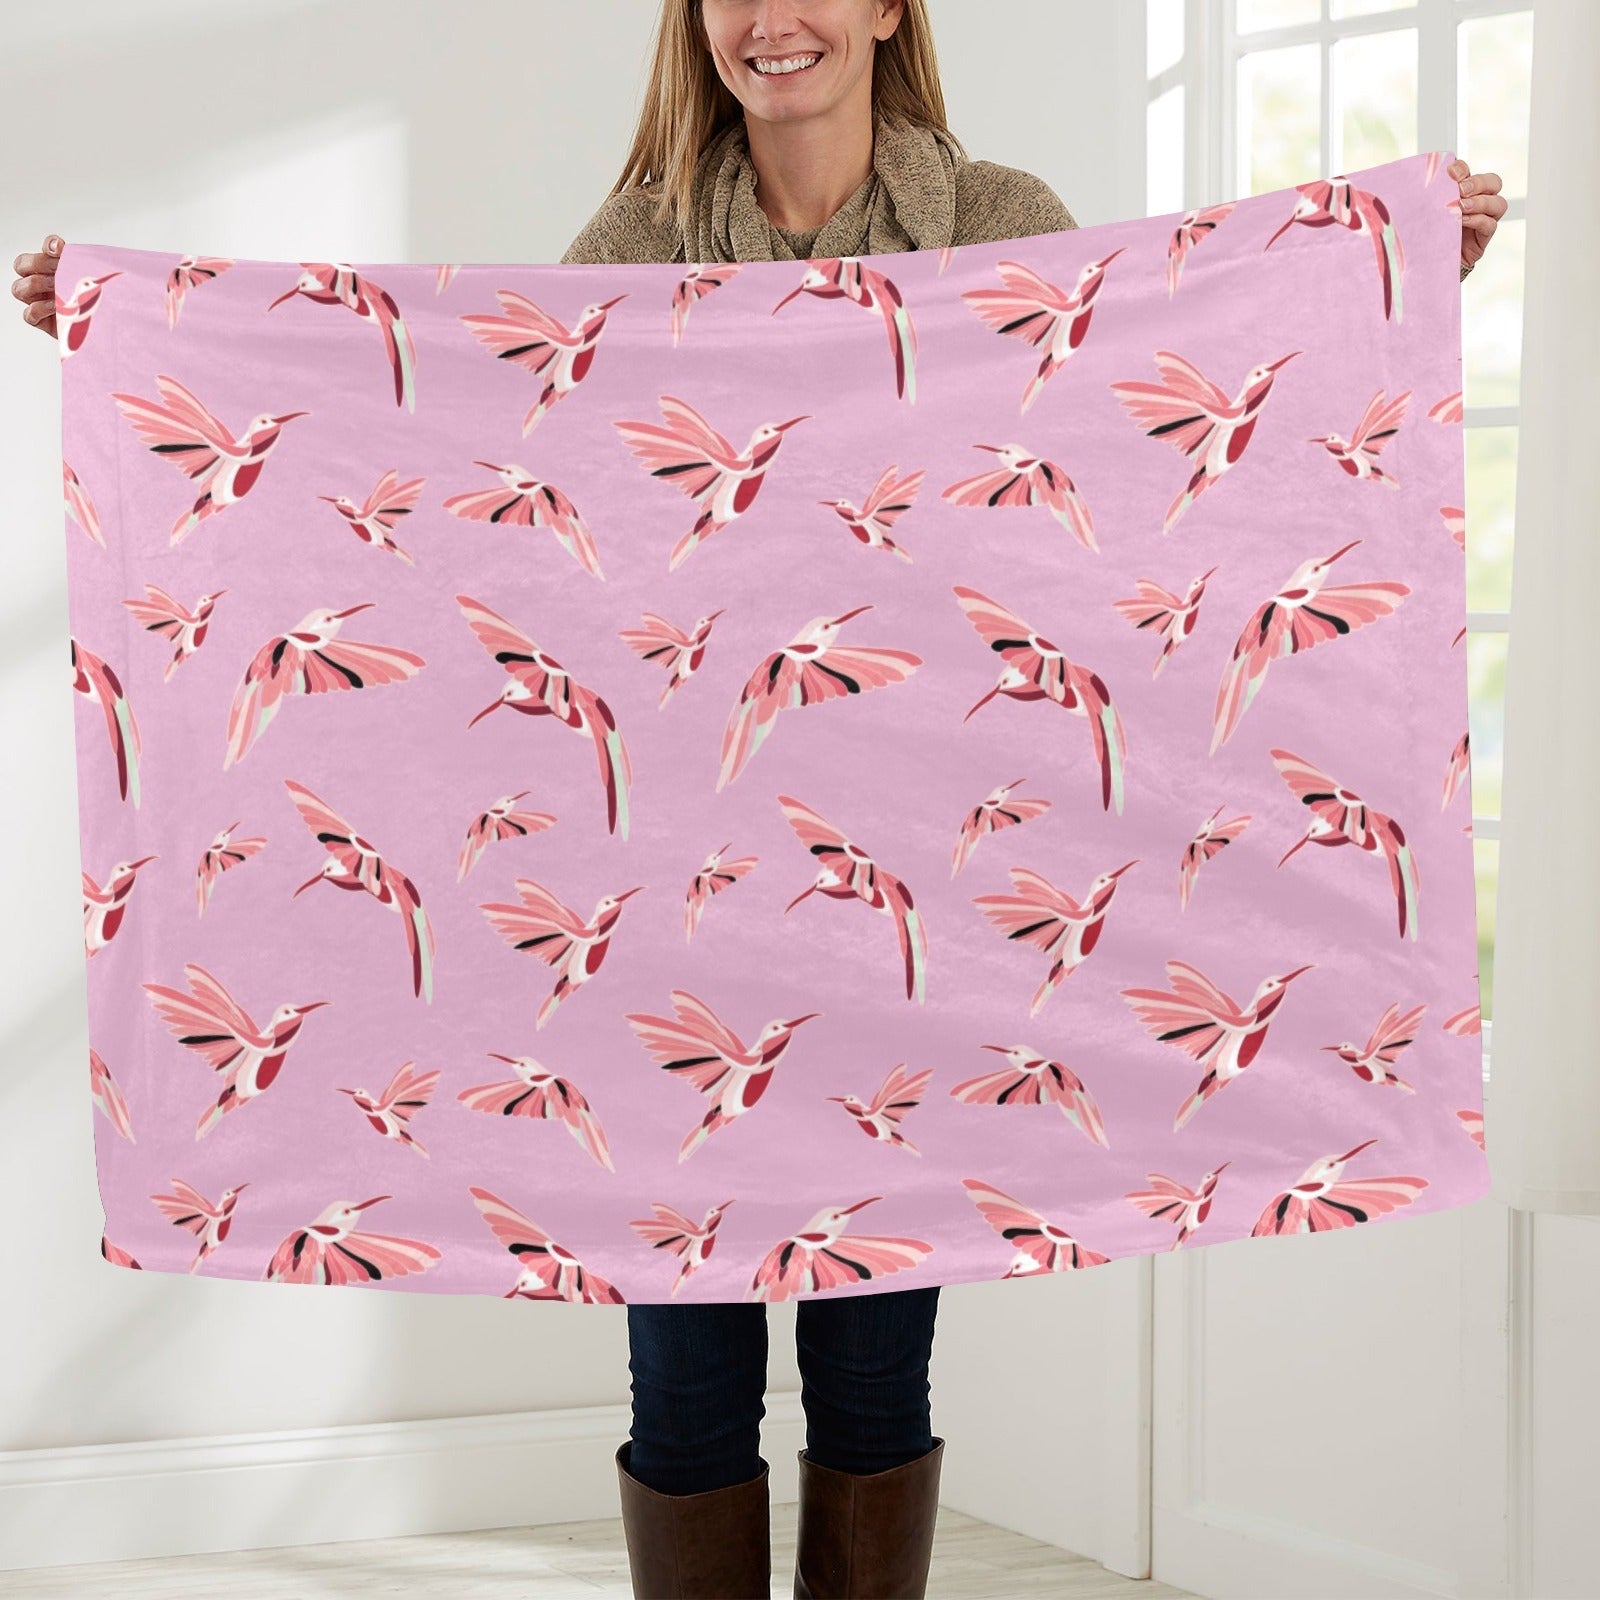 Strawberry Pink Baby Blanket 40"x50" Baby Blanket 40"x50" e-joyer 